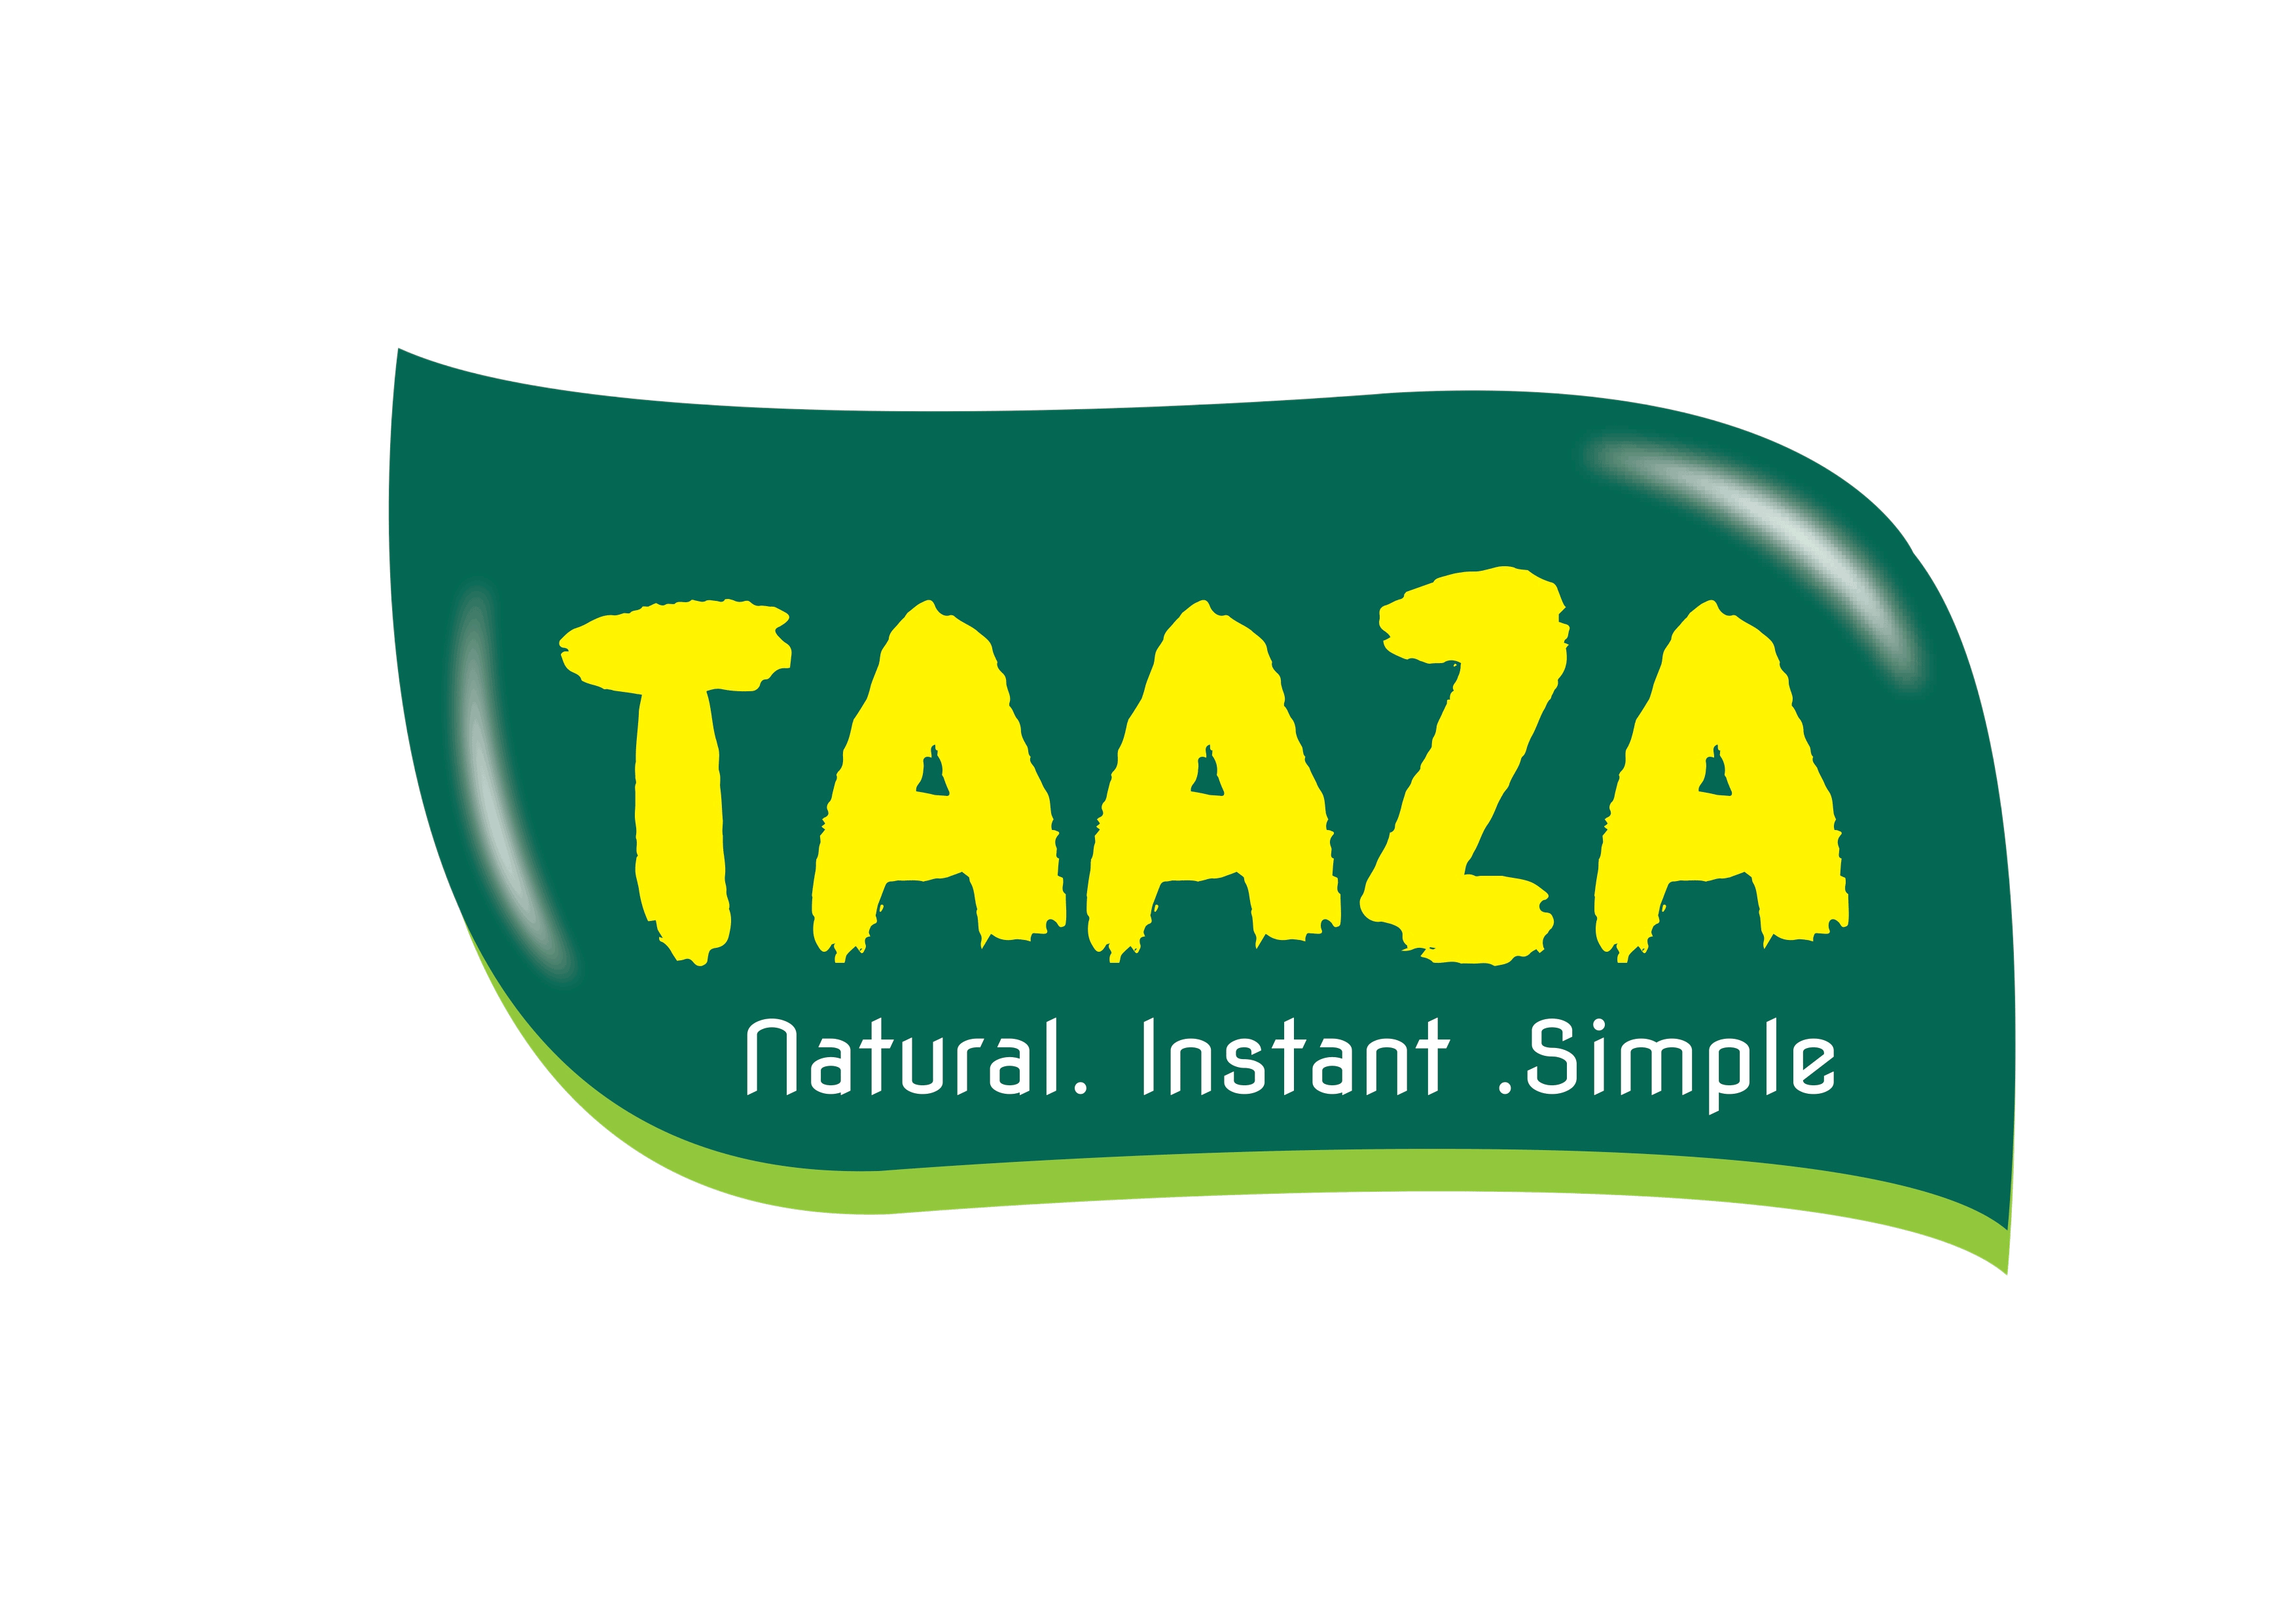 TF Lanka Taaza Logo